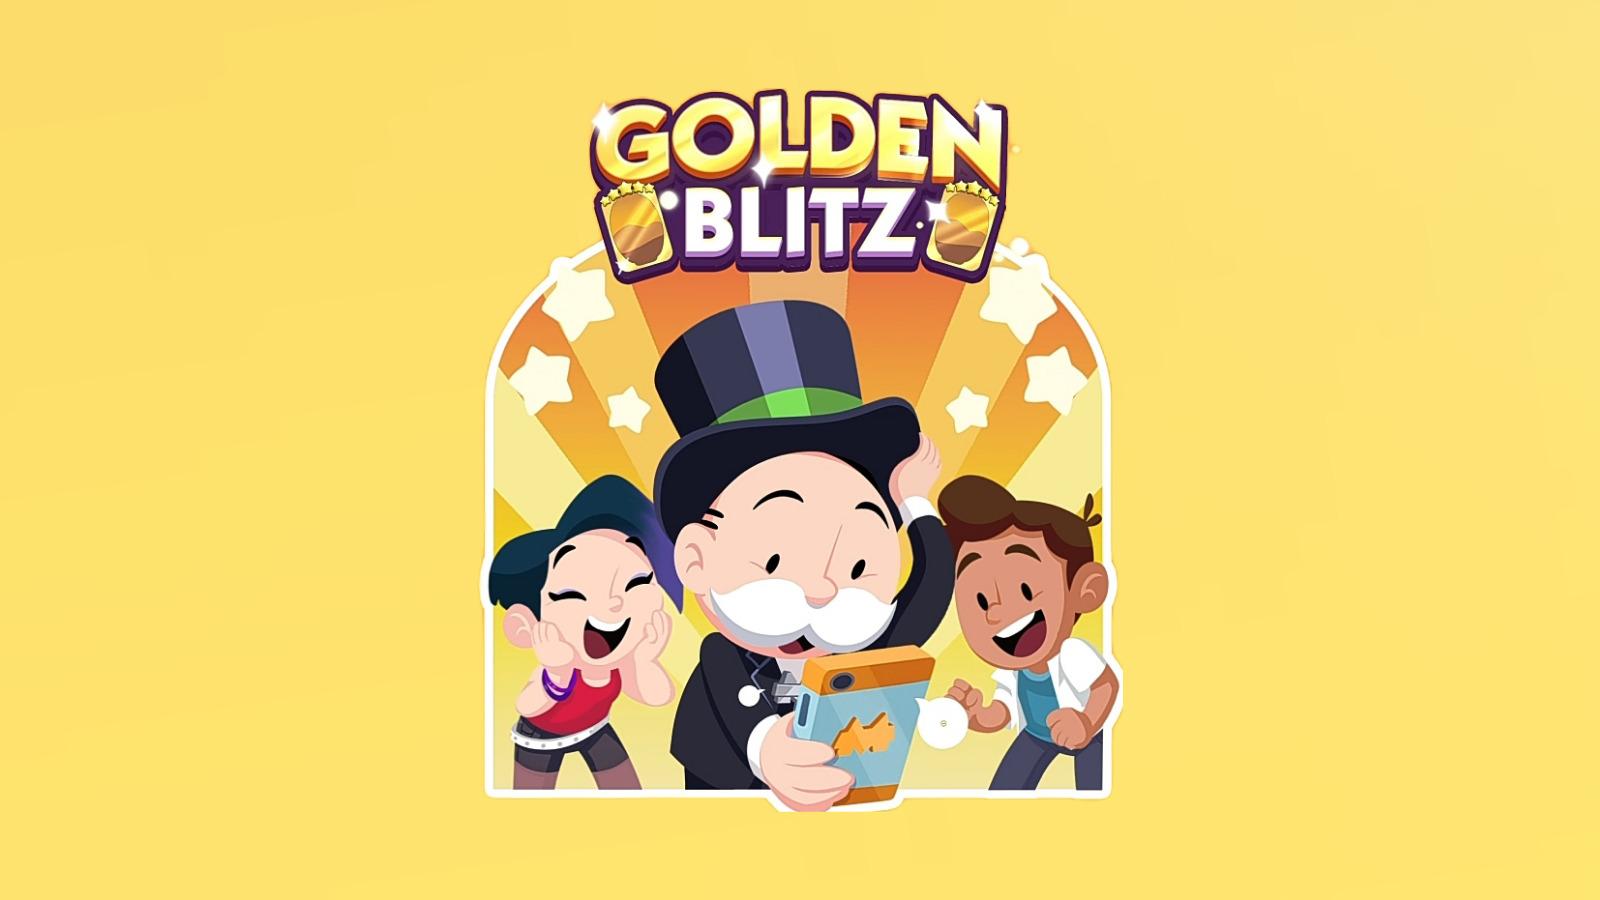 Golden Blitz art in Monopoly Go